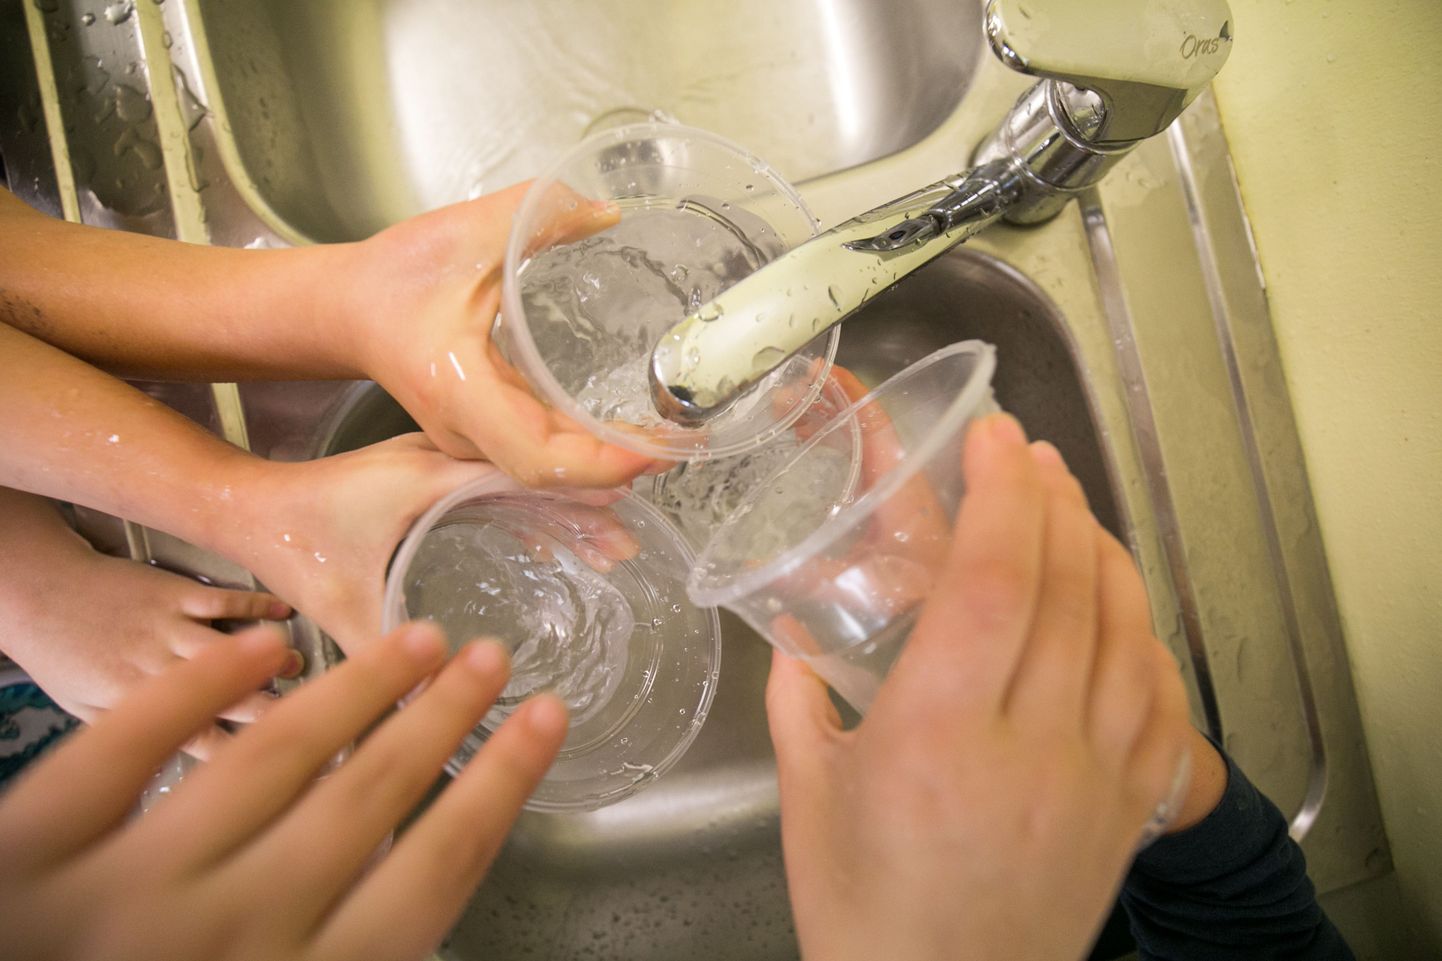 Päevas tasub juua kolm kuni neli klaasi vett.